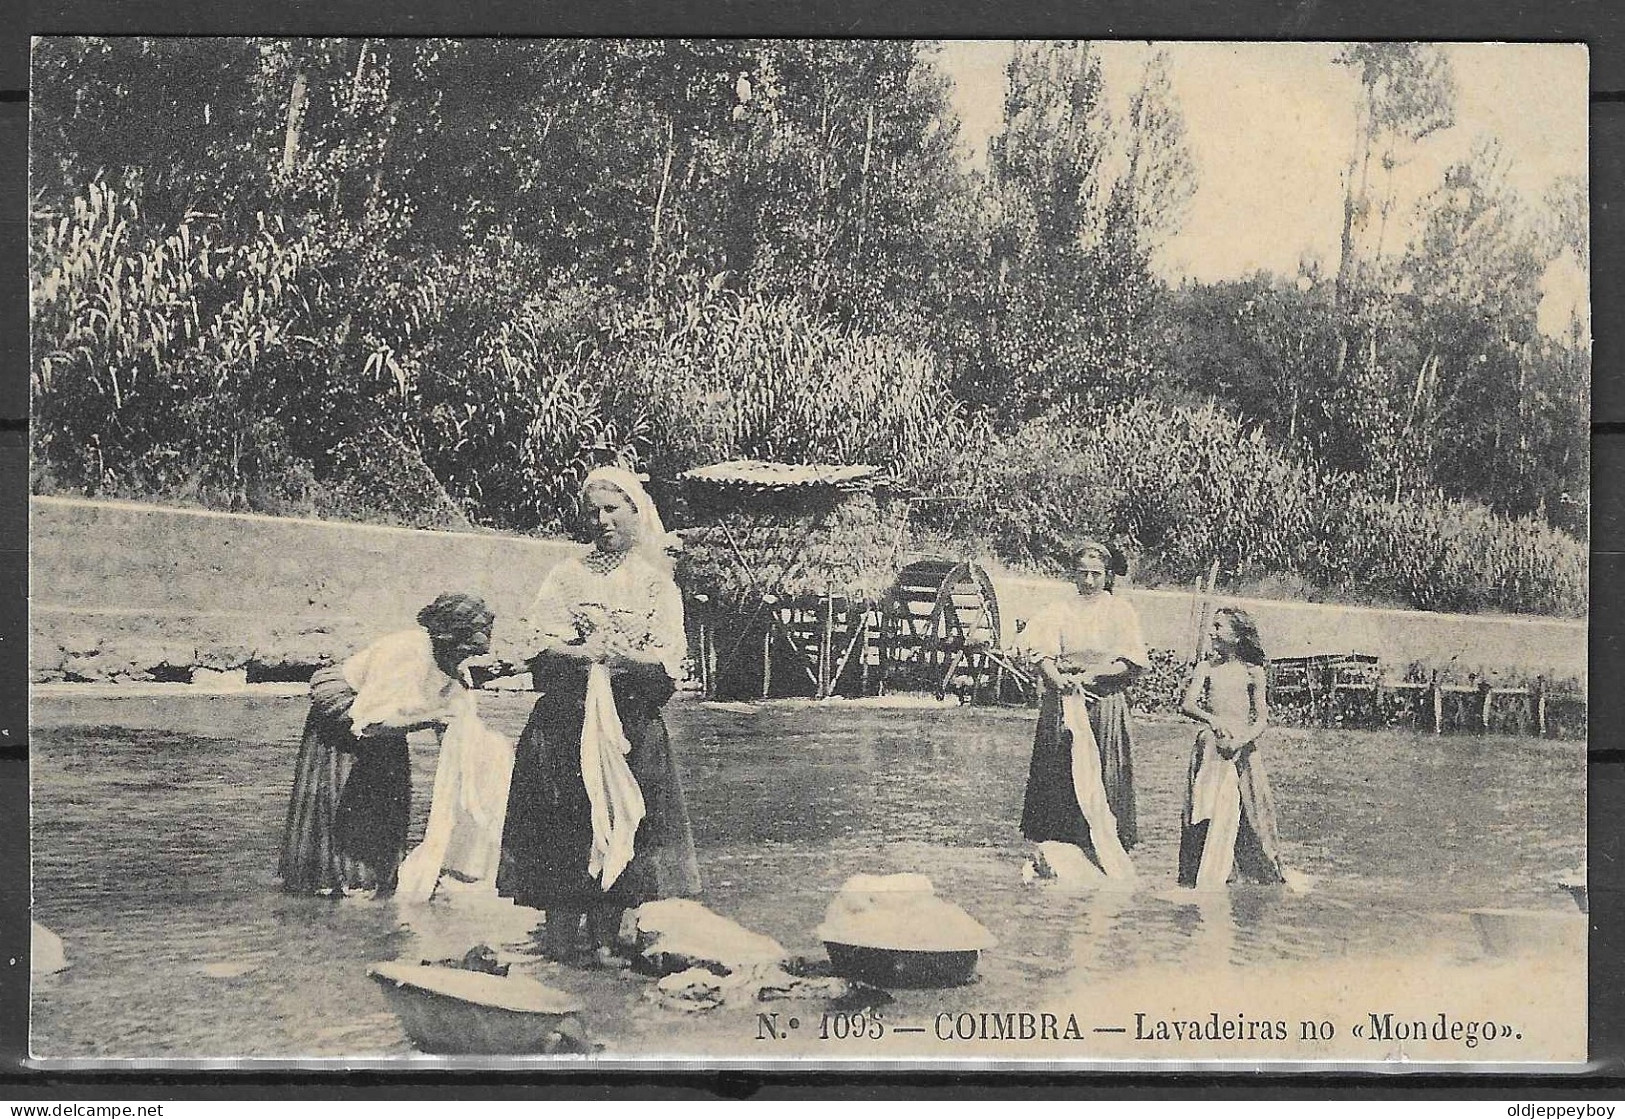 COIMBRA Costumes * Illustrated Monochrome Postcard "Laundress In Mondego", Edições Alberto Malva. New, Good Condition. - Mozambique